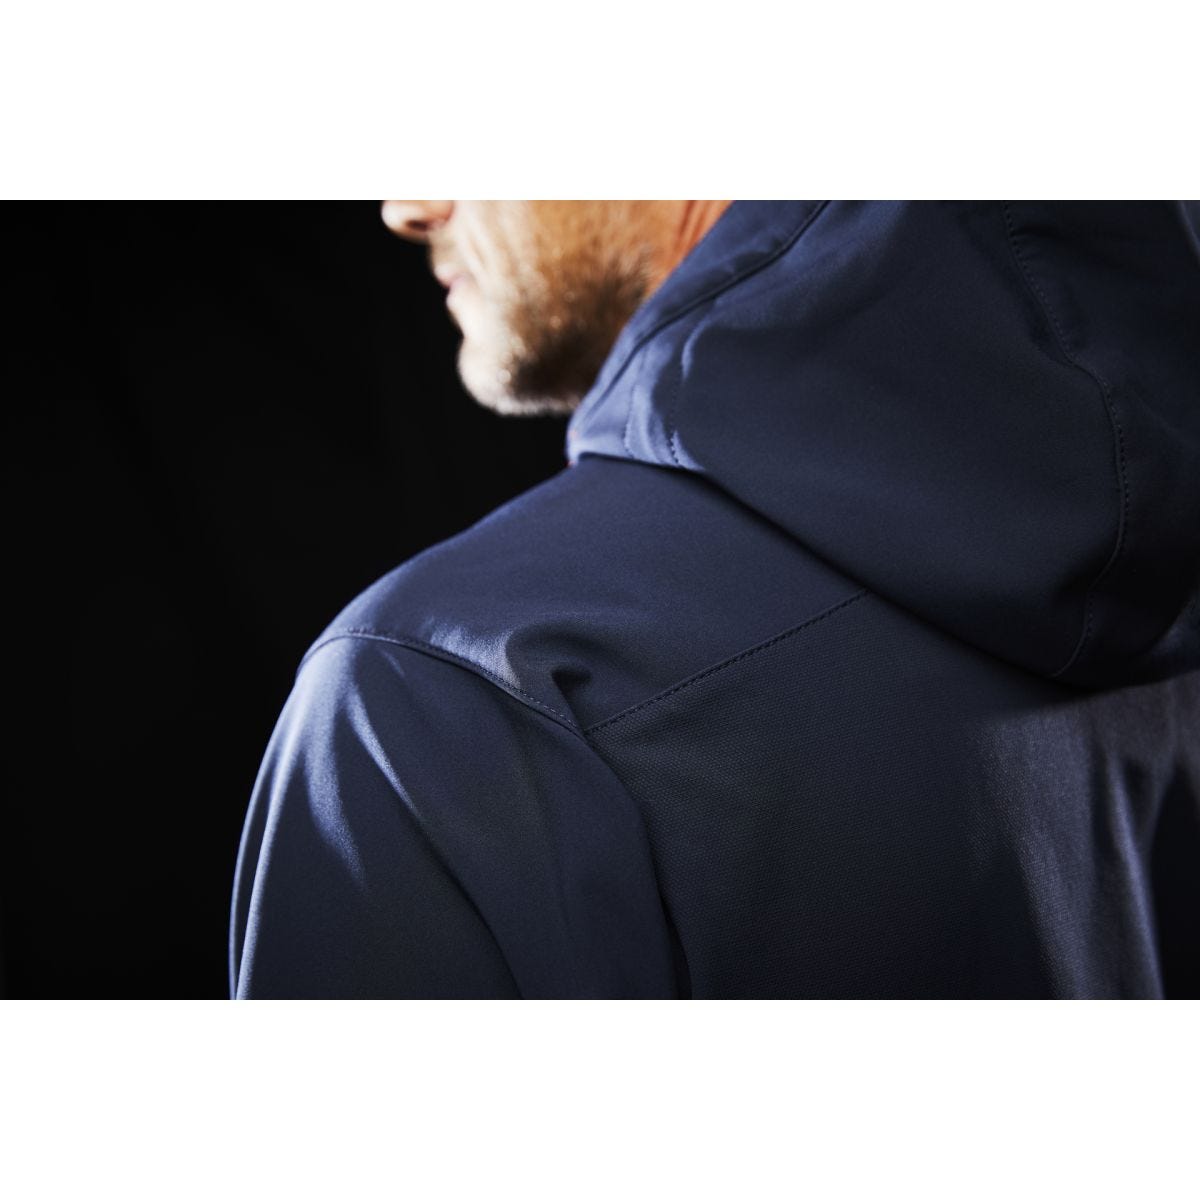 Sweatshirt à capuche polaire Chelsea Evolution Marine - Helly Hansen - Taille M 4